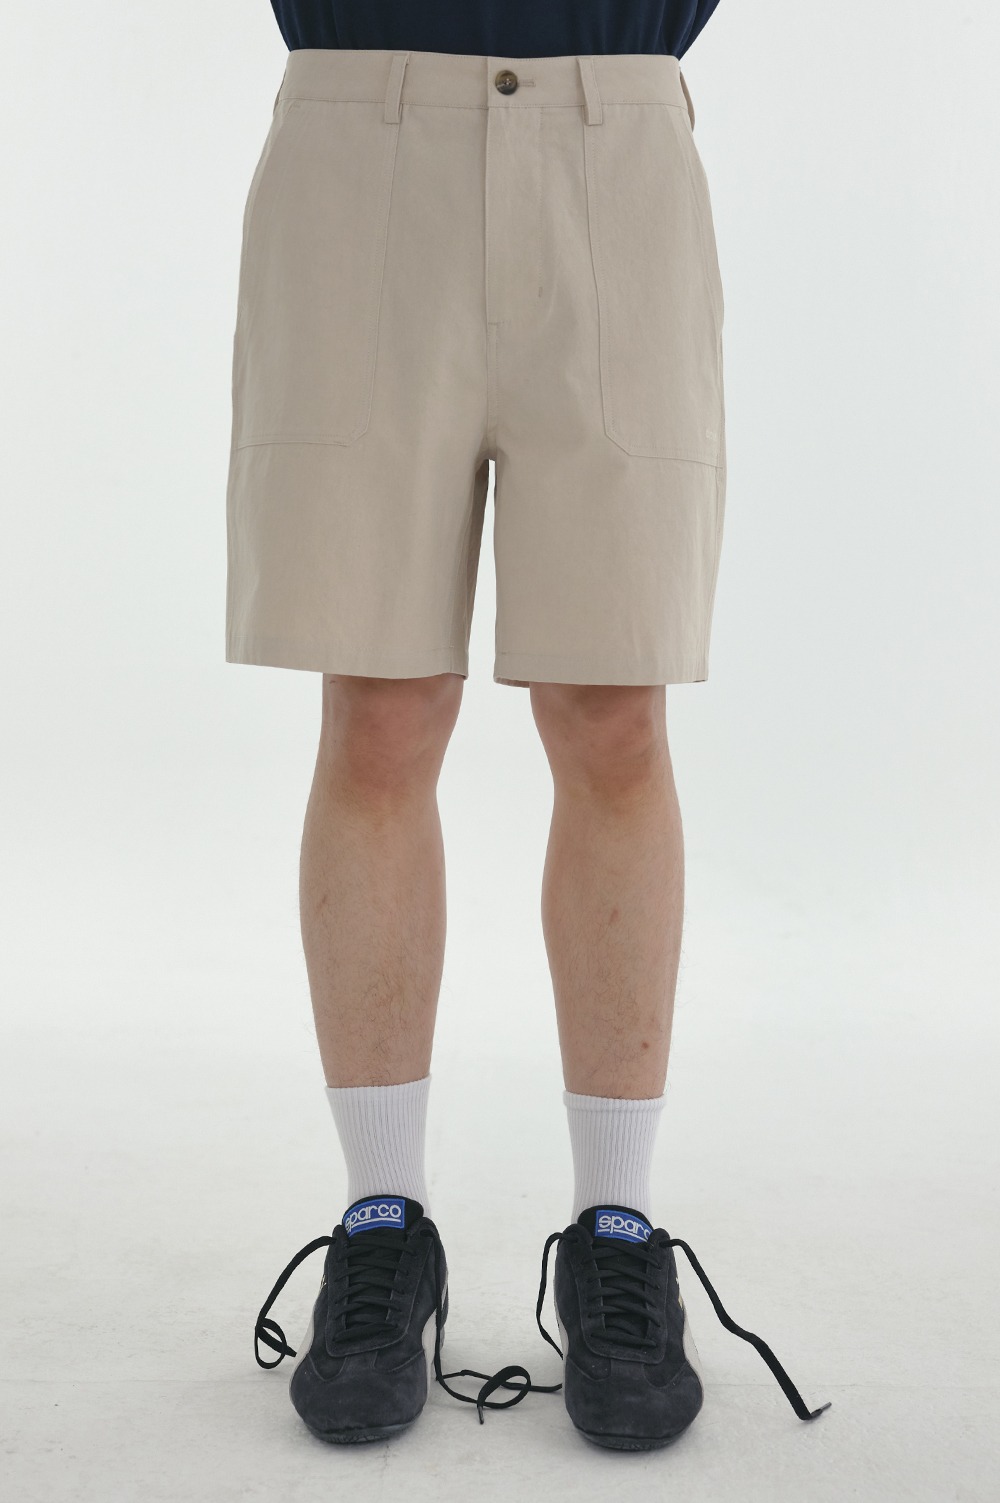 clove - [24SS clove] Fatigue Shorts (Beige)